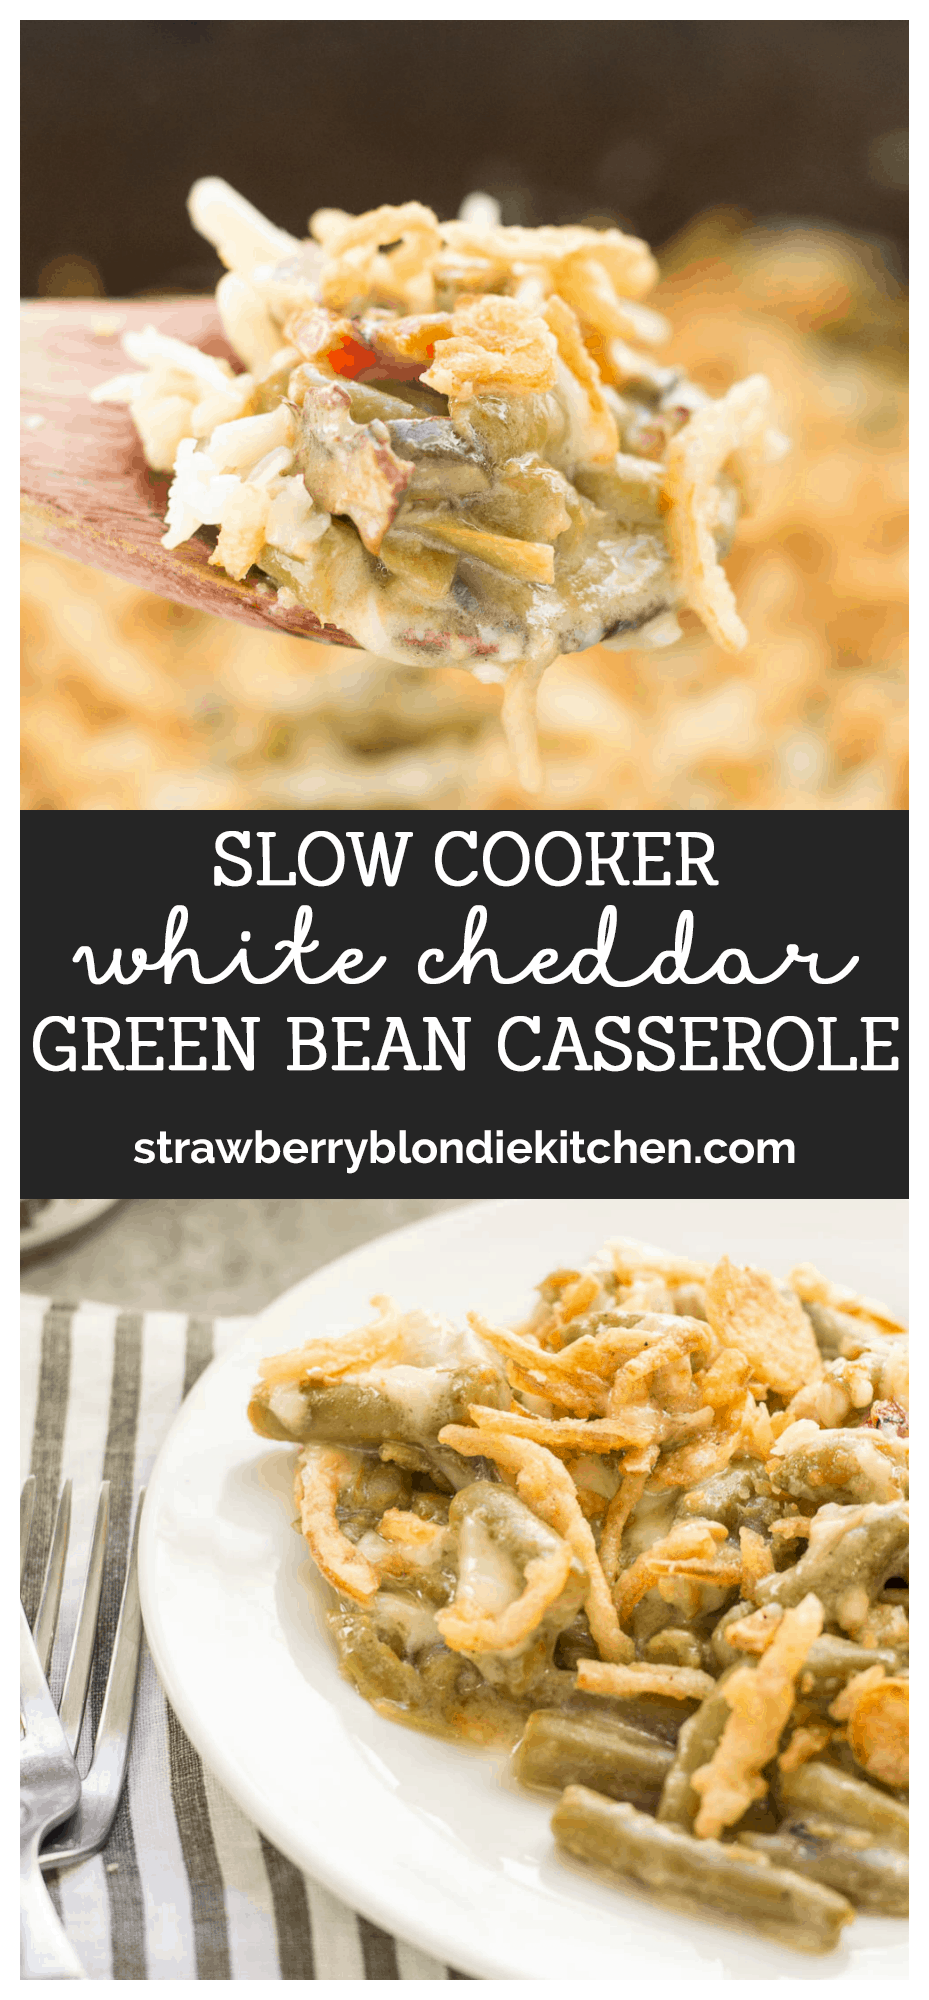 Slow Cooker White Cheddar Green Bean Casserole - Strawberry Blondie Kitchen